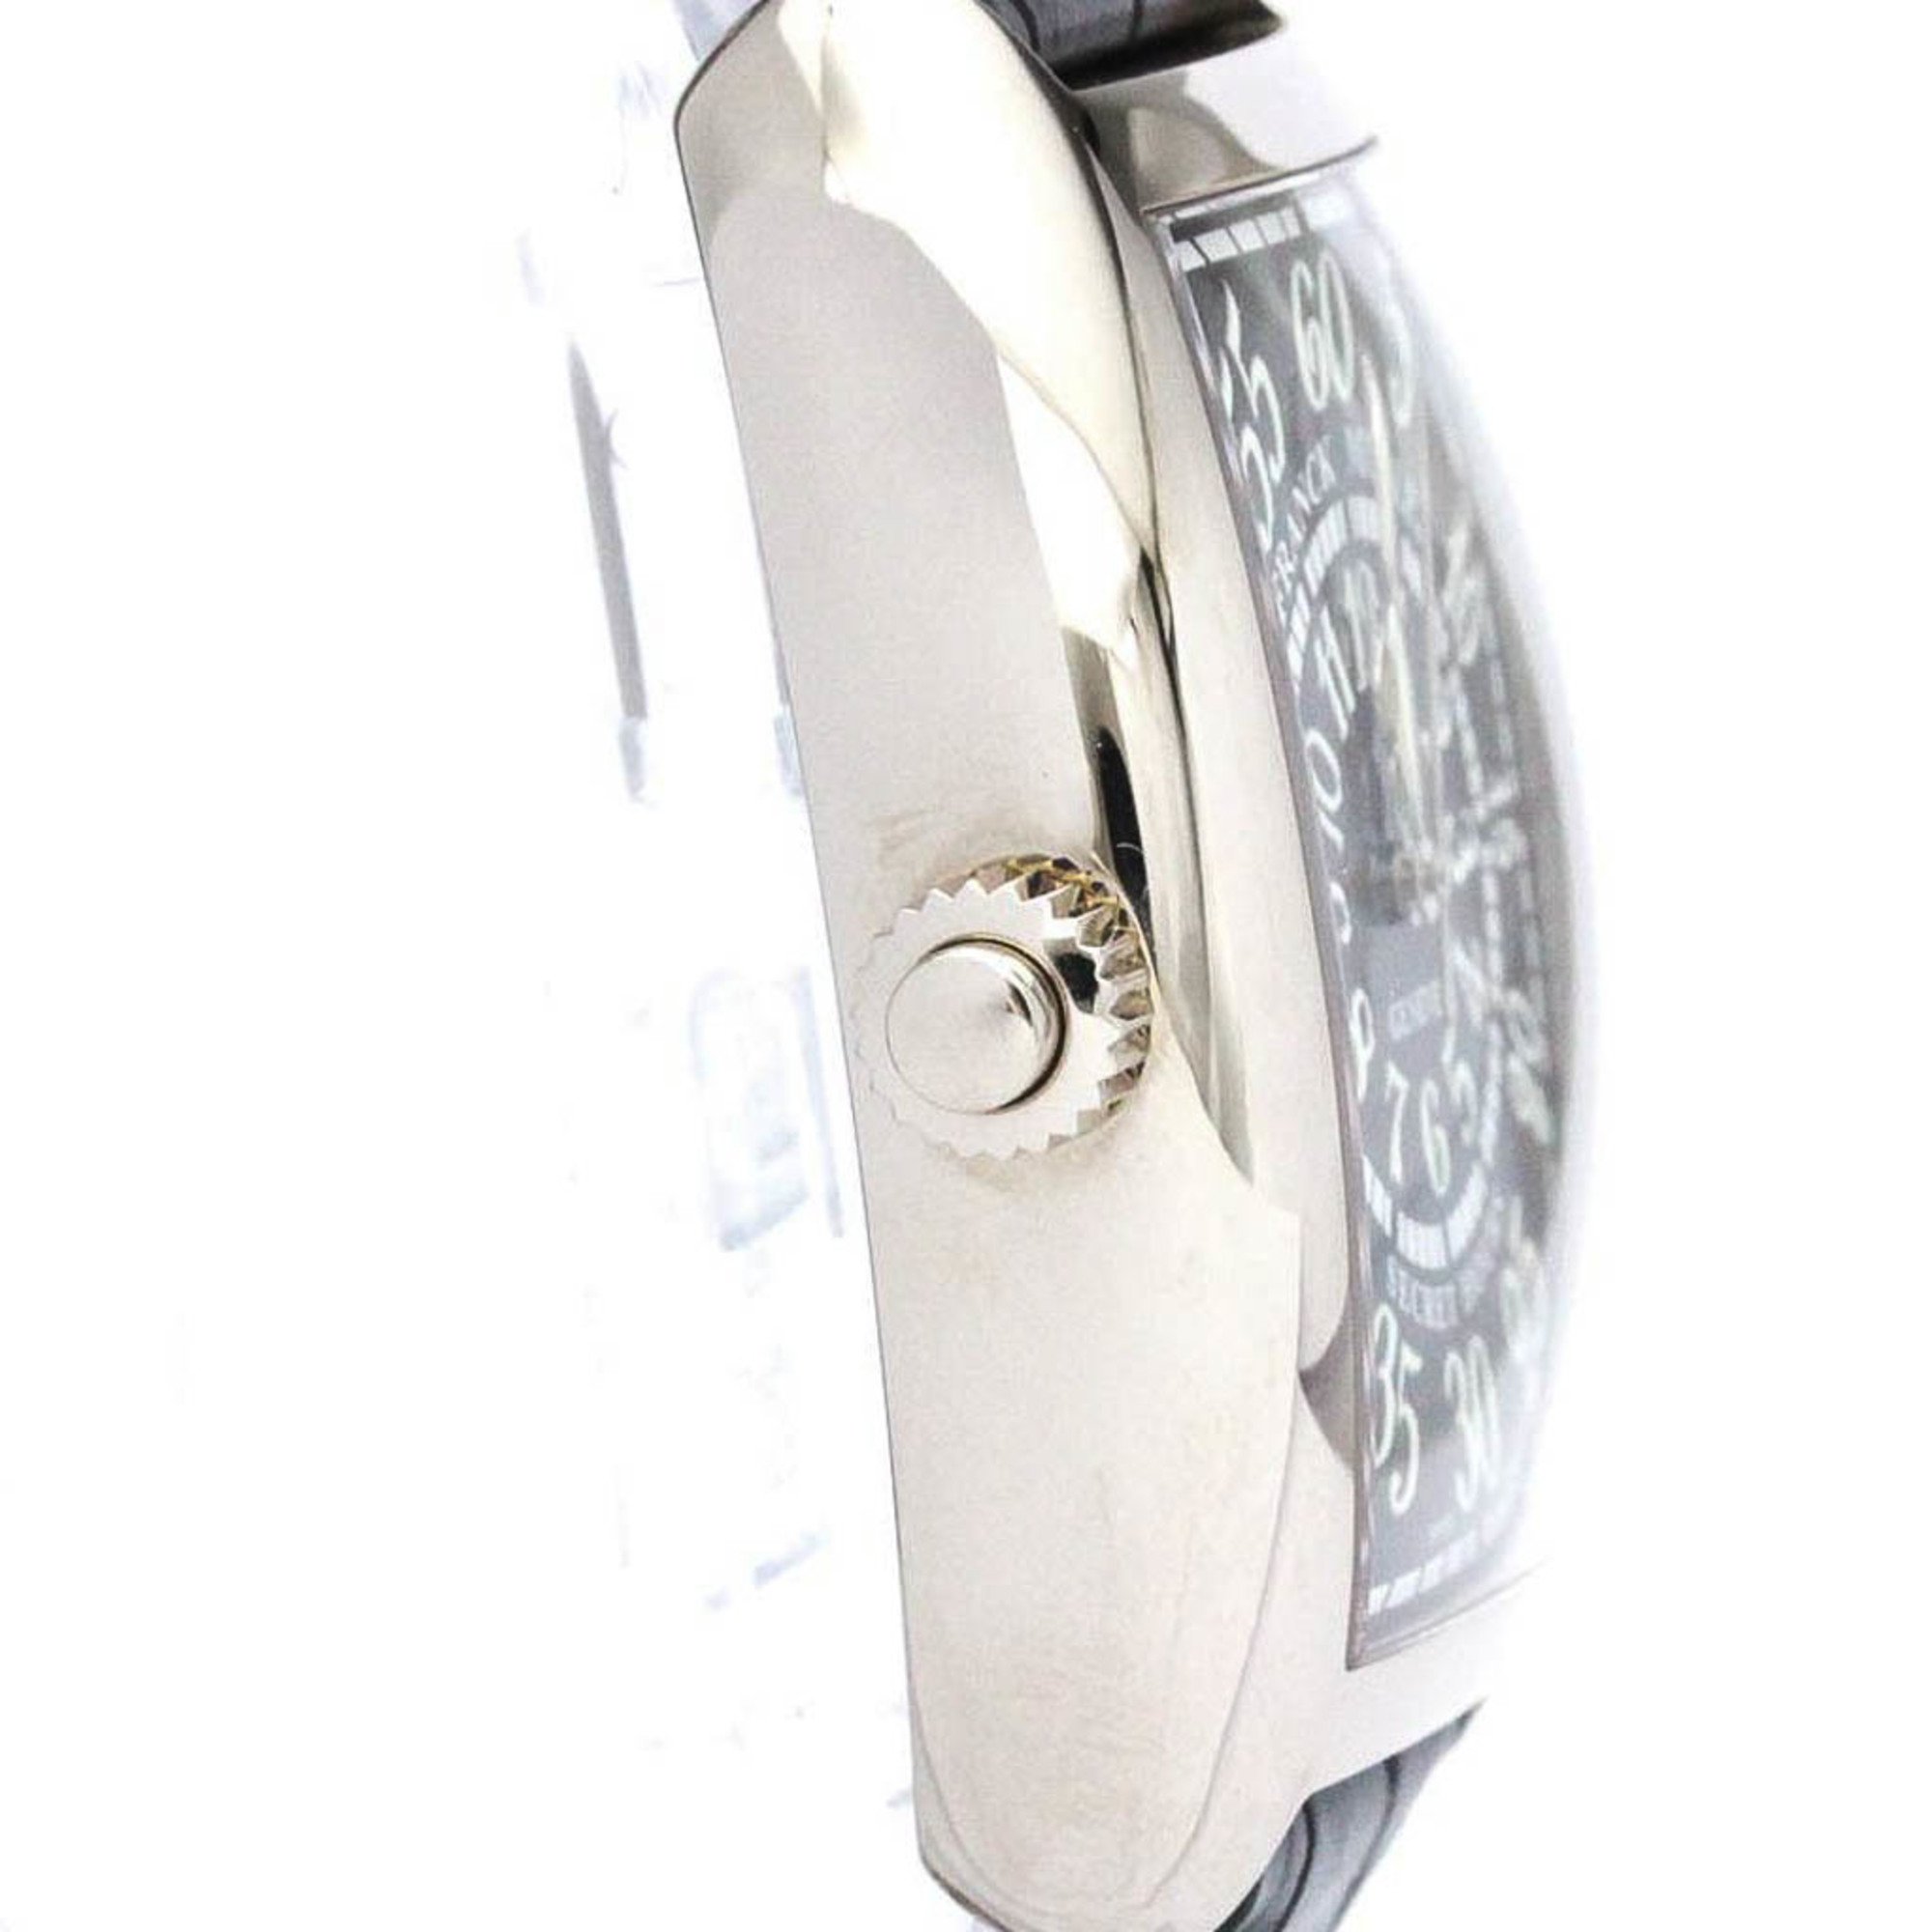 FRANCK MULLER Cintree Curvex Secret Hours 18K Gold Watch 7880 SE H 2 BF565488